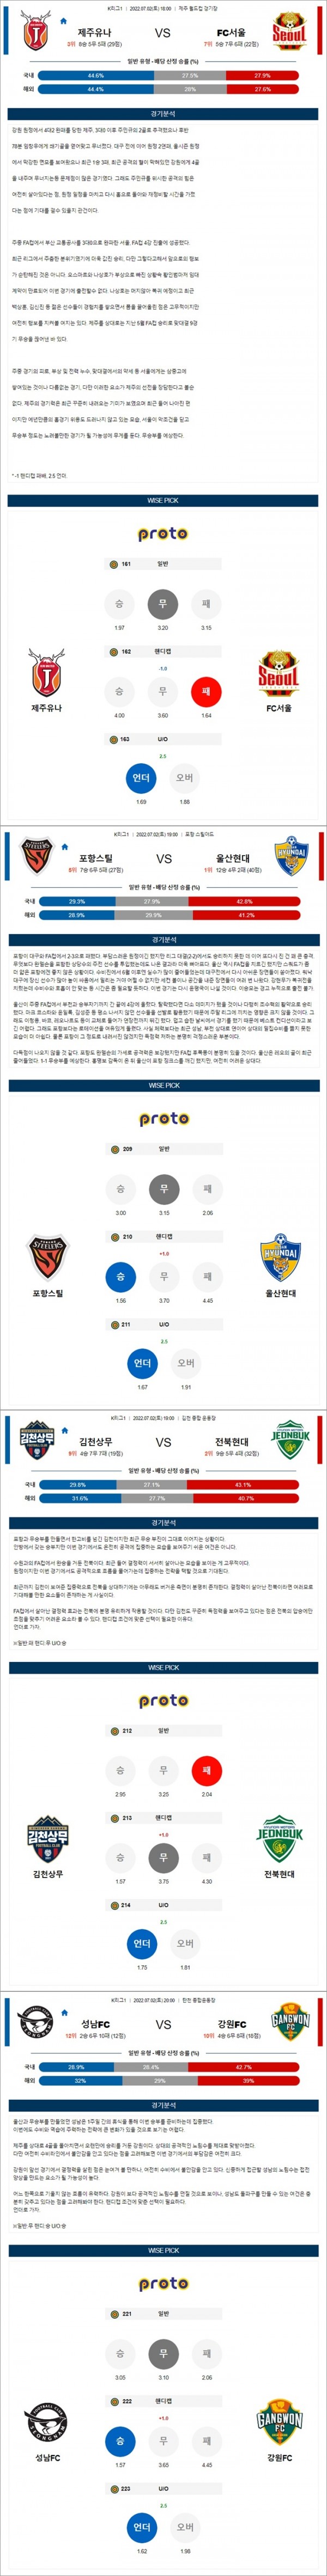 7월02일 K리그1 4경기 통합 분석.jpg